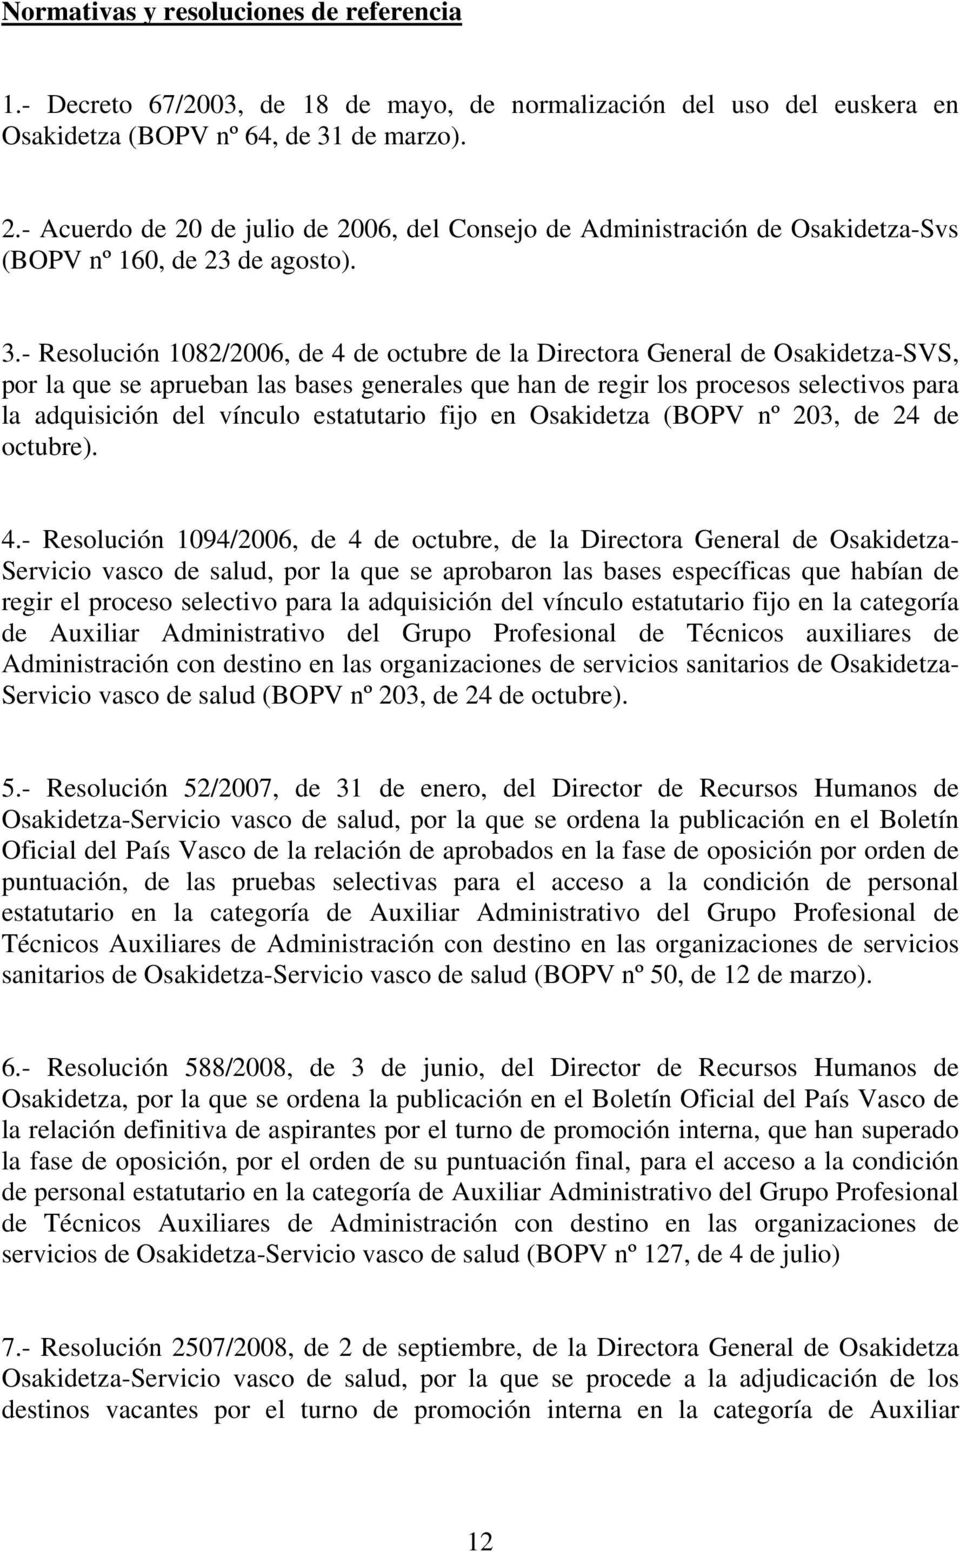 - Resolución 1082/2006, de 4 de octubre de la Directora General de Osakidetza-SVS, por la que se aprueban las bases generales que han de regir los procesos selectivos para la adquisición del vínculo